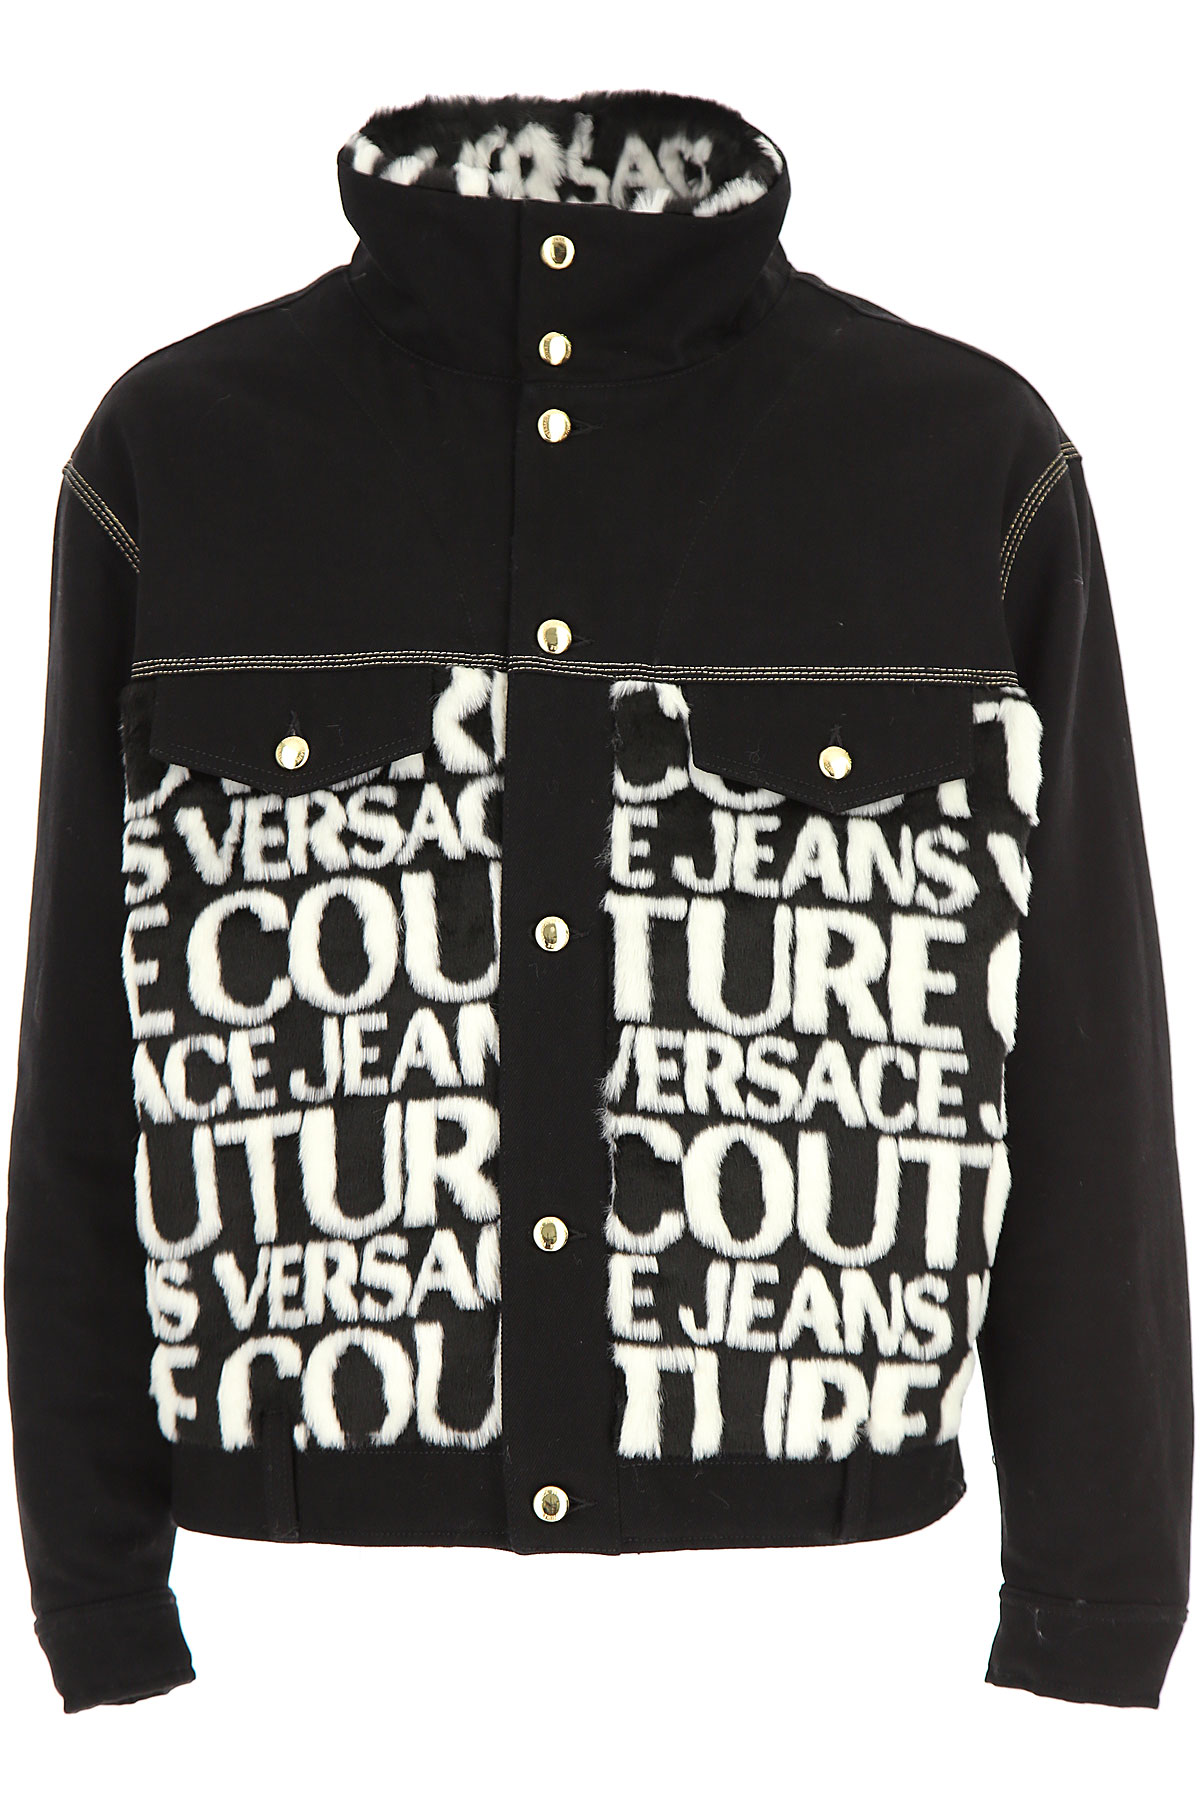 Versace Jeans Couture Jacke für Herren Günstig im Sale, Schwarz, Baumwolle, 2017, L S